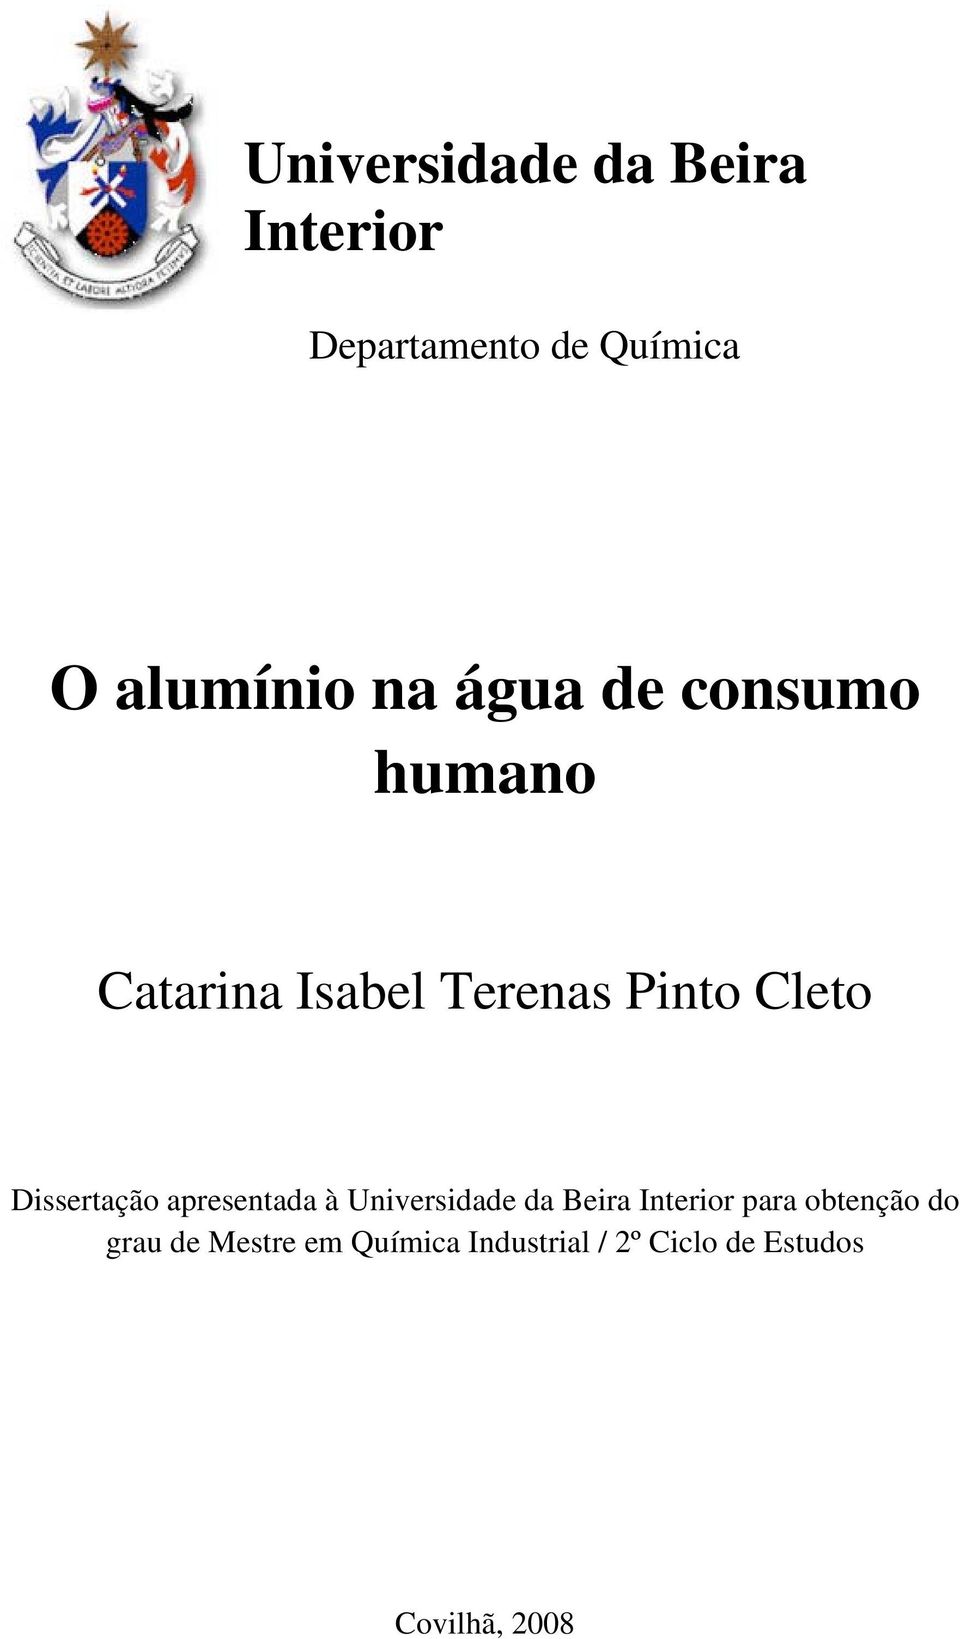 Dissertação apresentada à Universidade da Beira Interior para